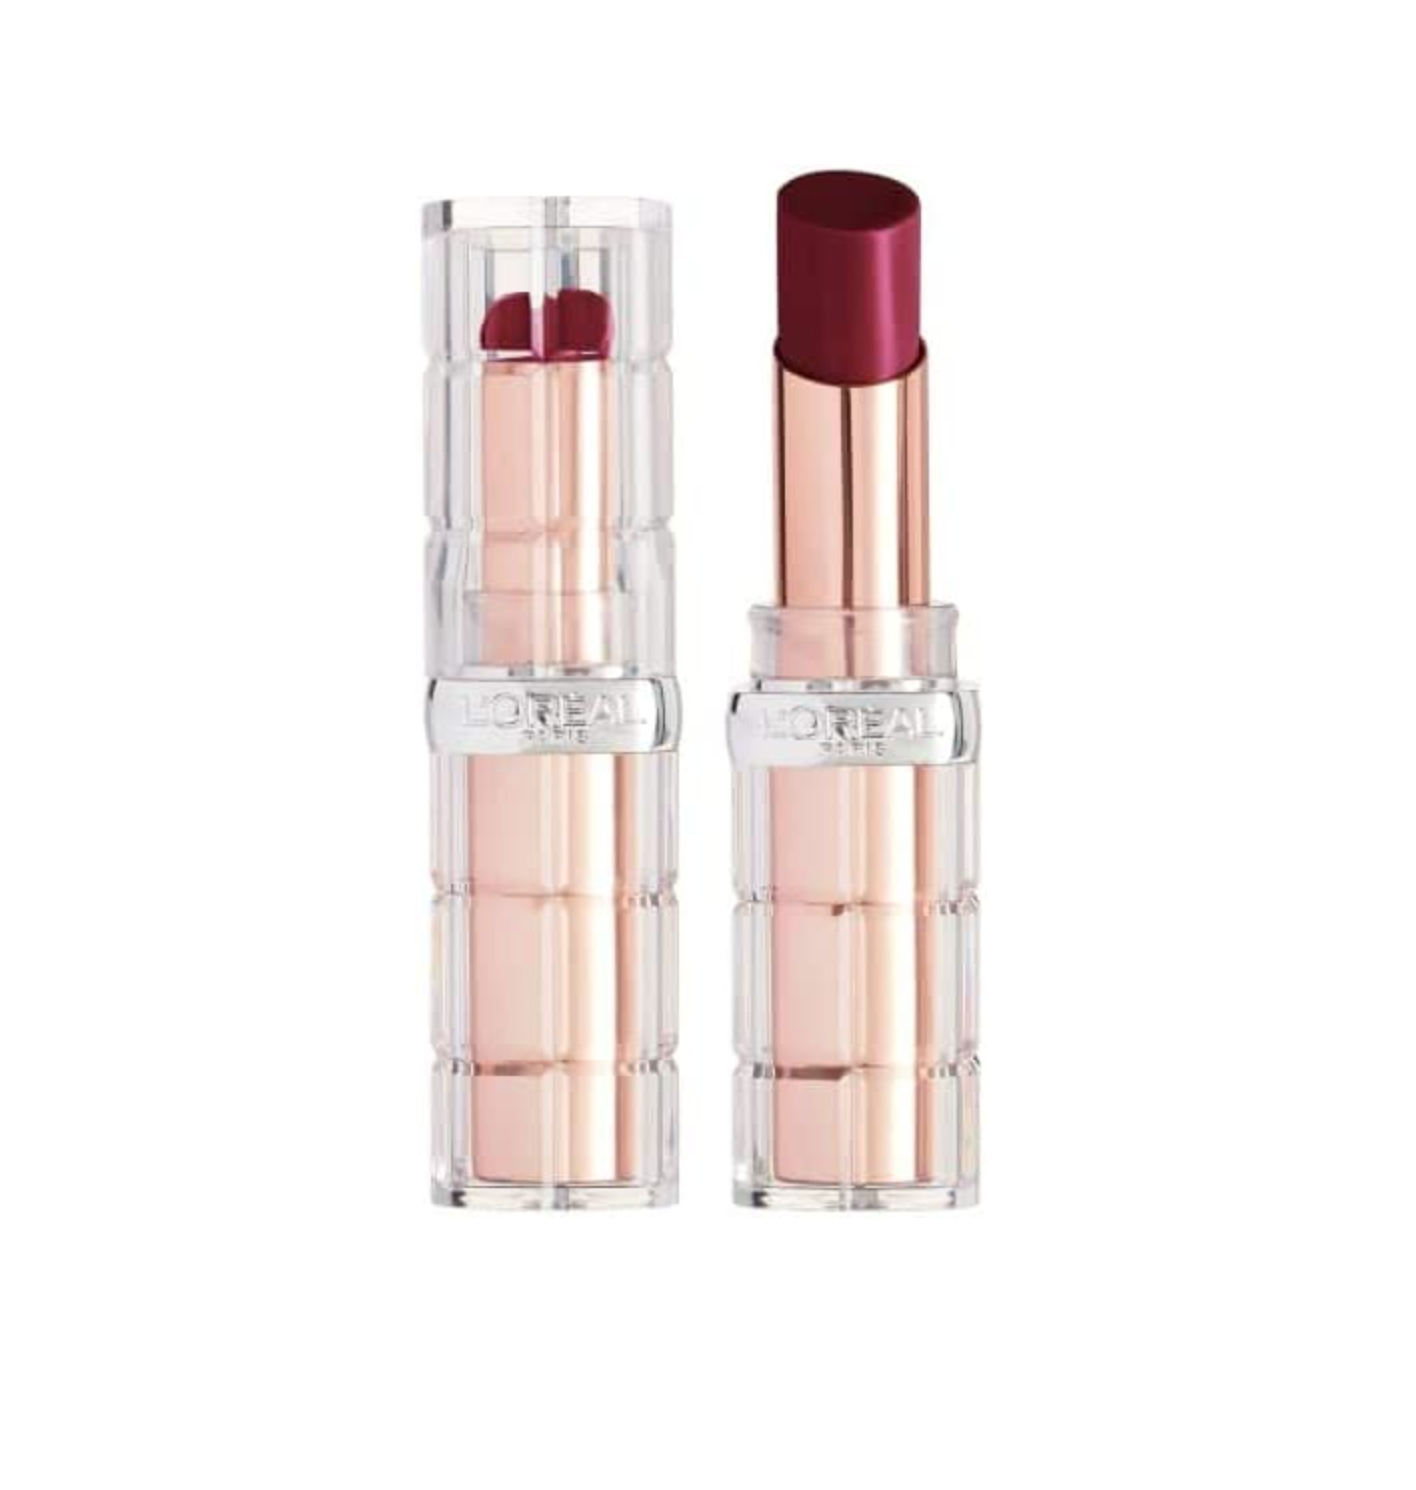 L'Oreal Color Riche Shine Lipstick - Wild Fig Plump